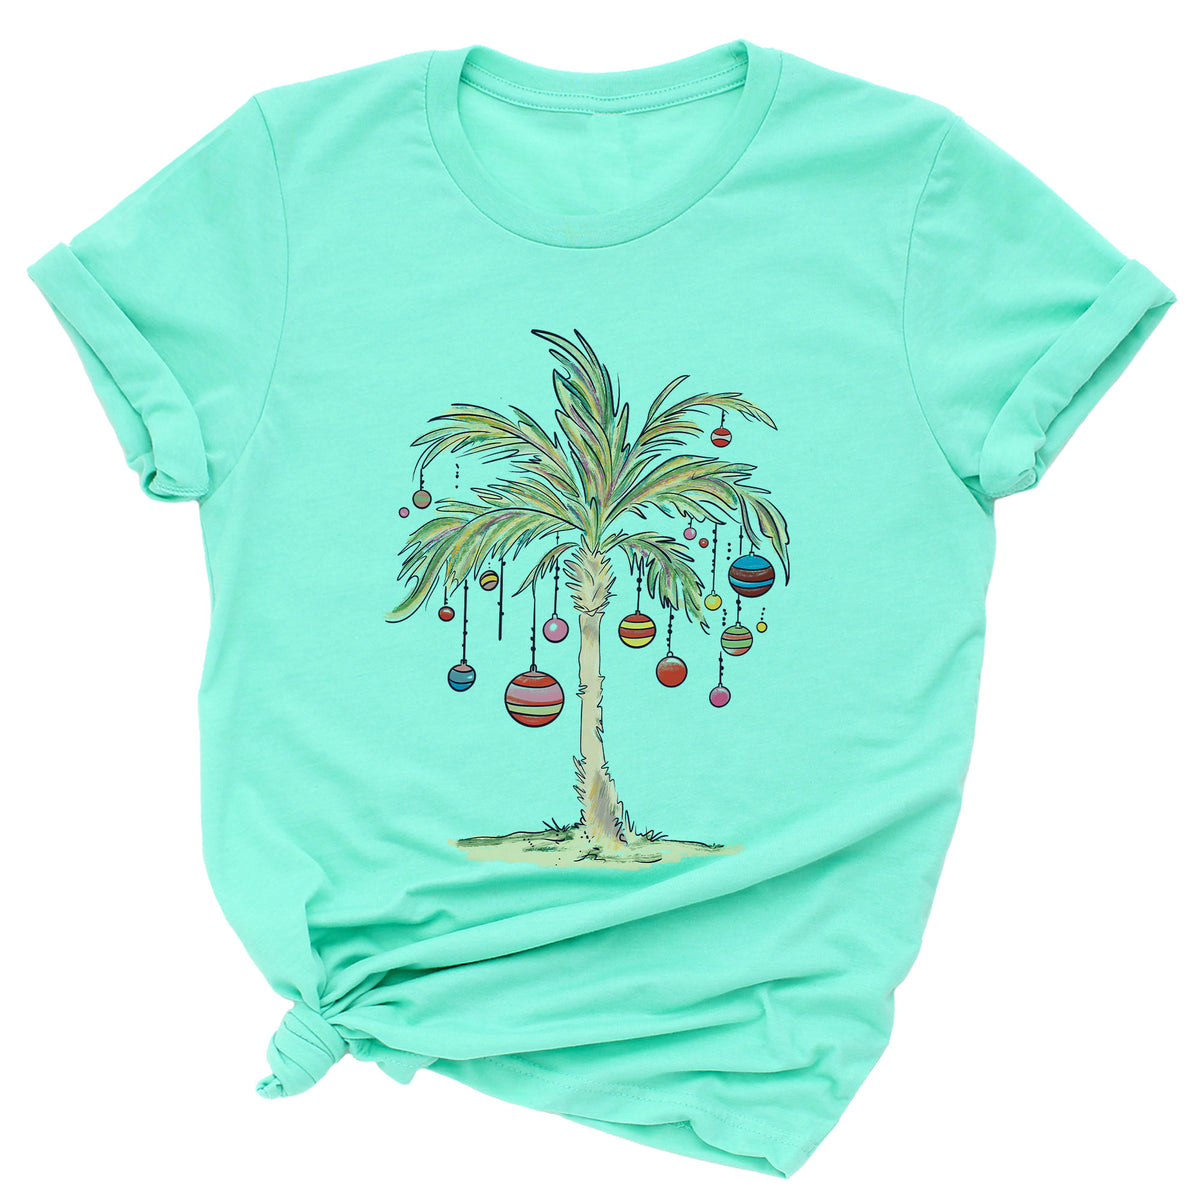 Tropical Christmas Palm Tree Unisex T-Shirt